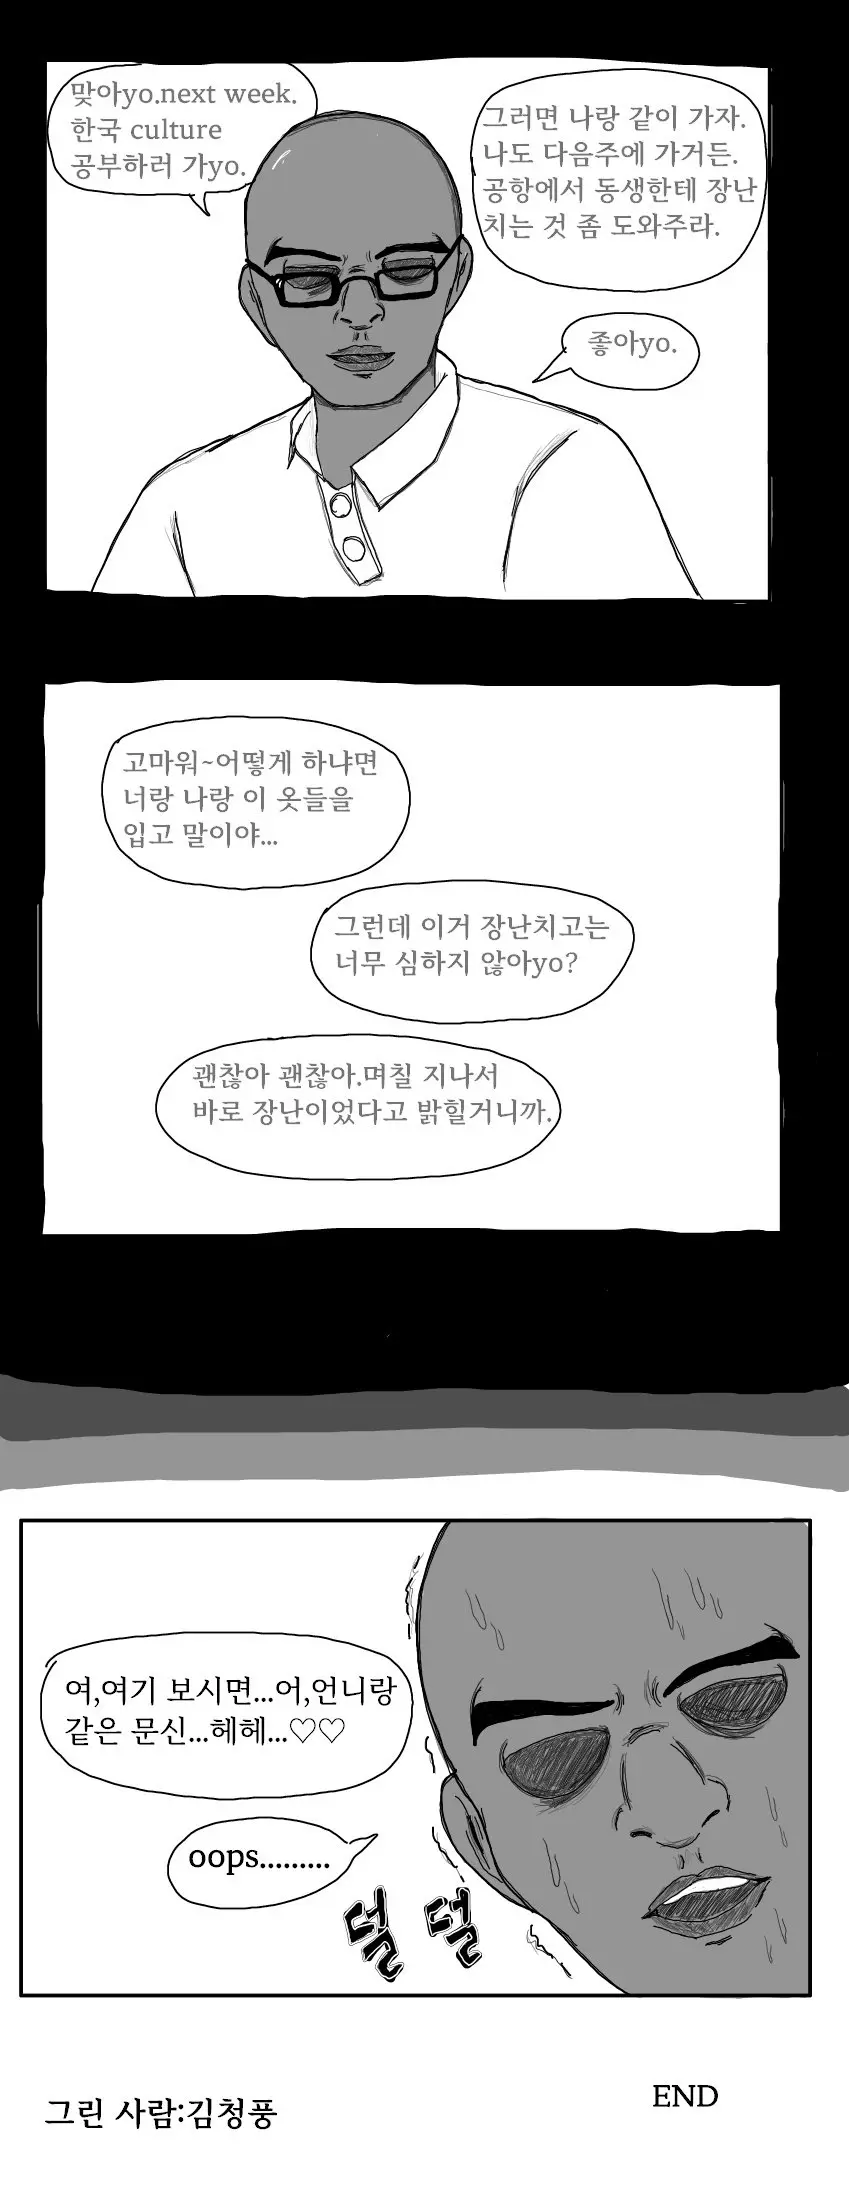 ㅇㅎ)음침녀의 언니가 유학 갔다가 돌아온 만화.manhwa | mbong.kr 엠봉